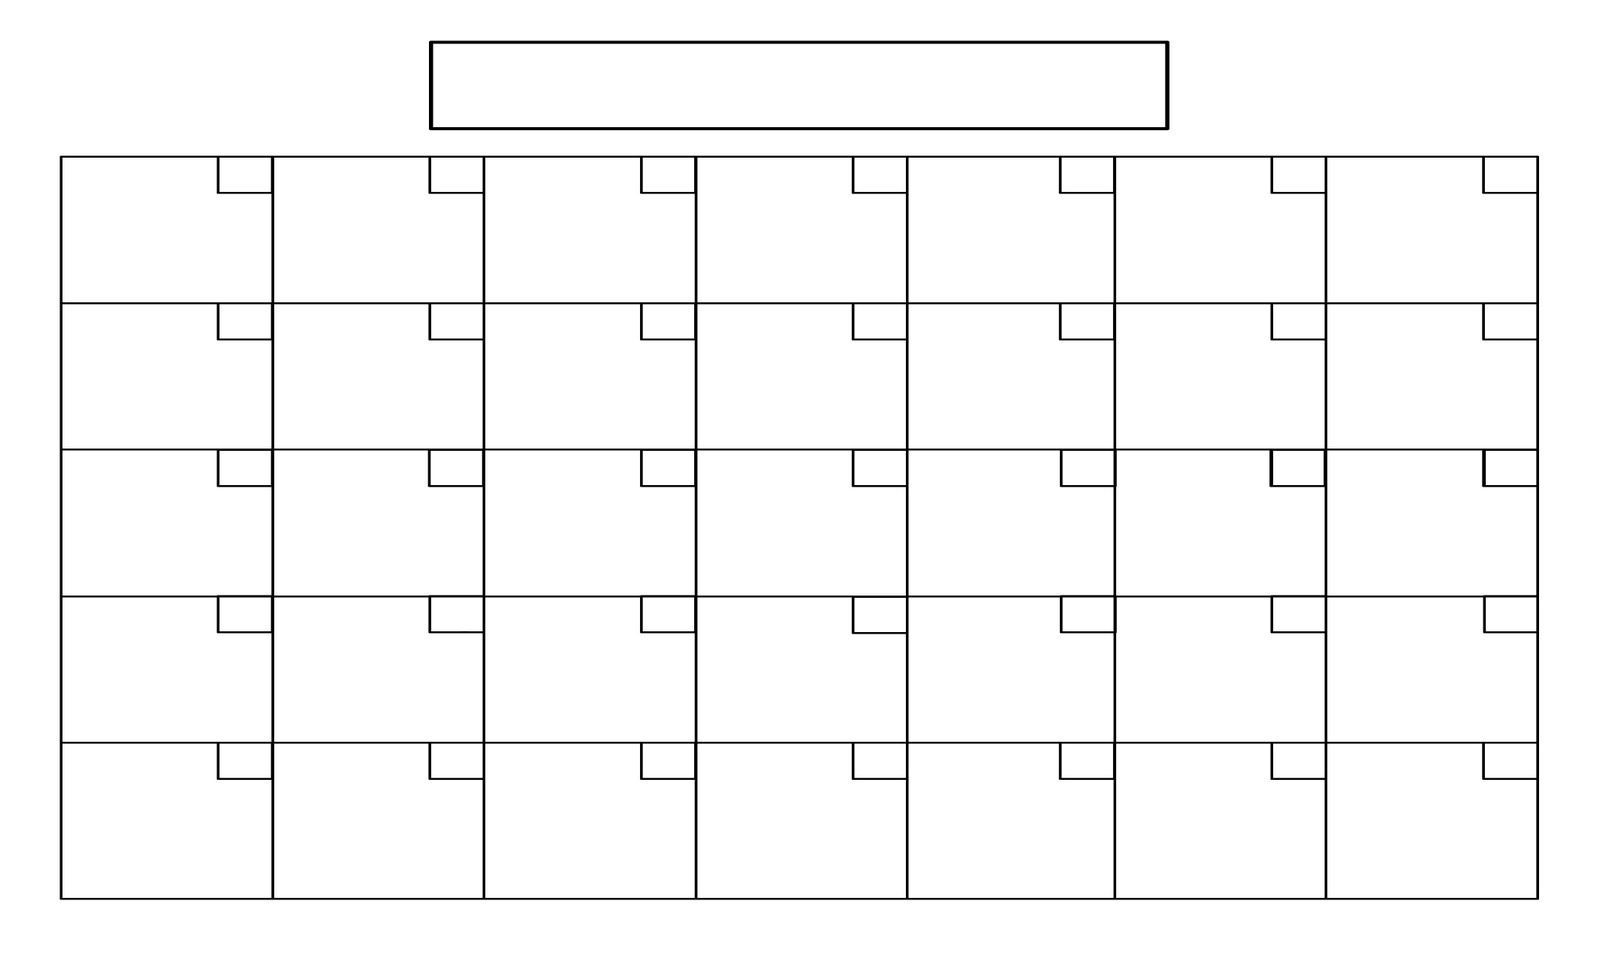 blank-calendar-with-no-dates-example-calendar-printable